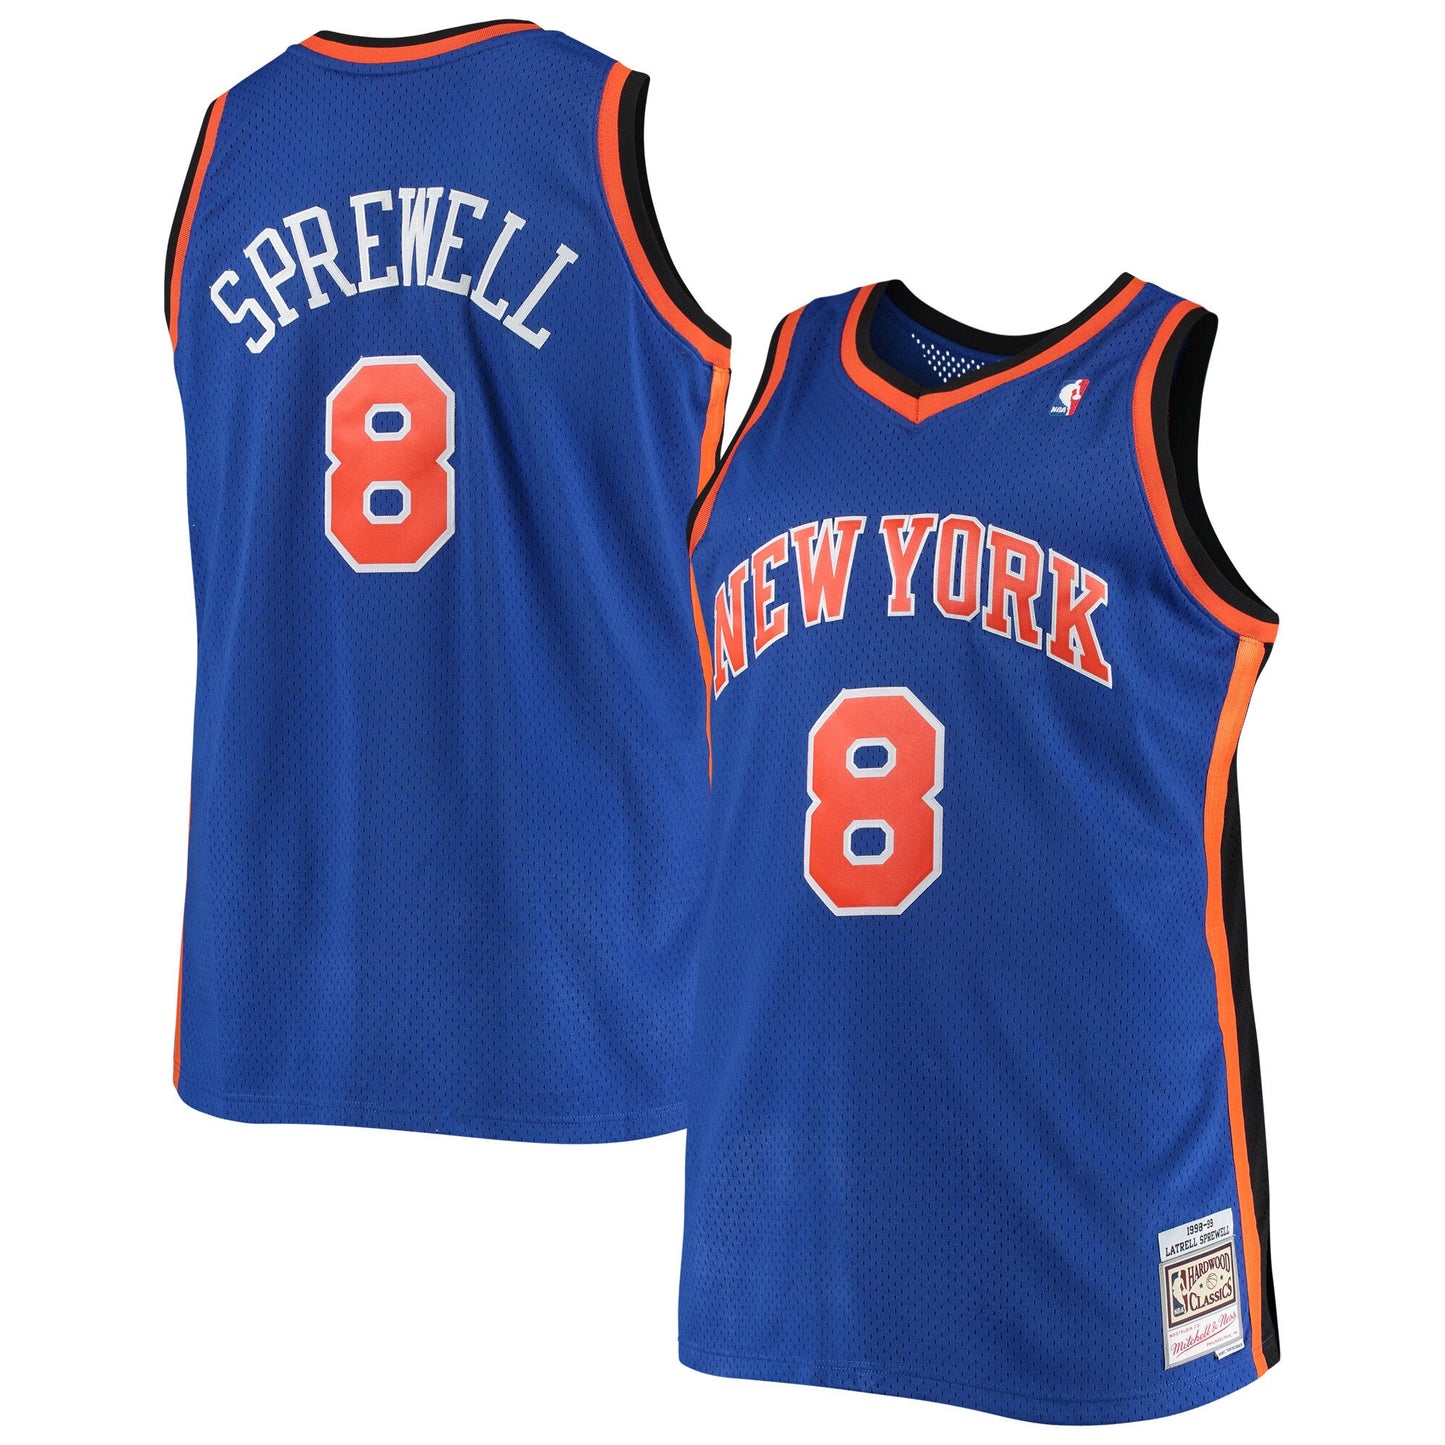 Latrell Sprewell New York Knicks Mitchell & Ness Big & Tall Hardwood Classics Jersey - Blue